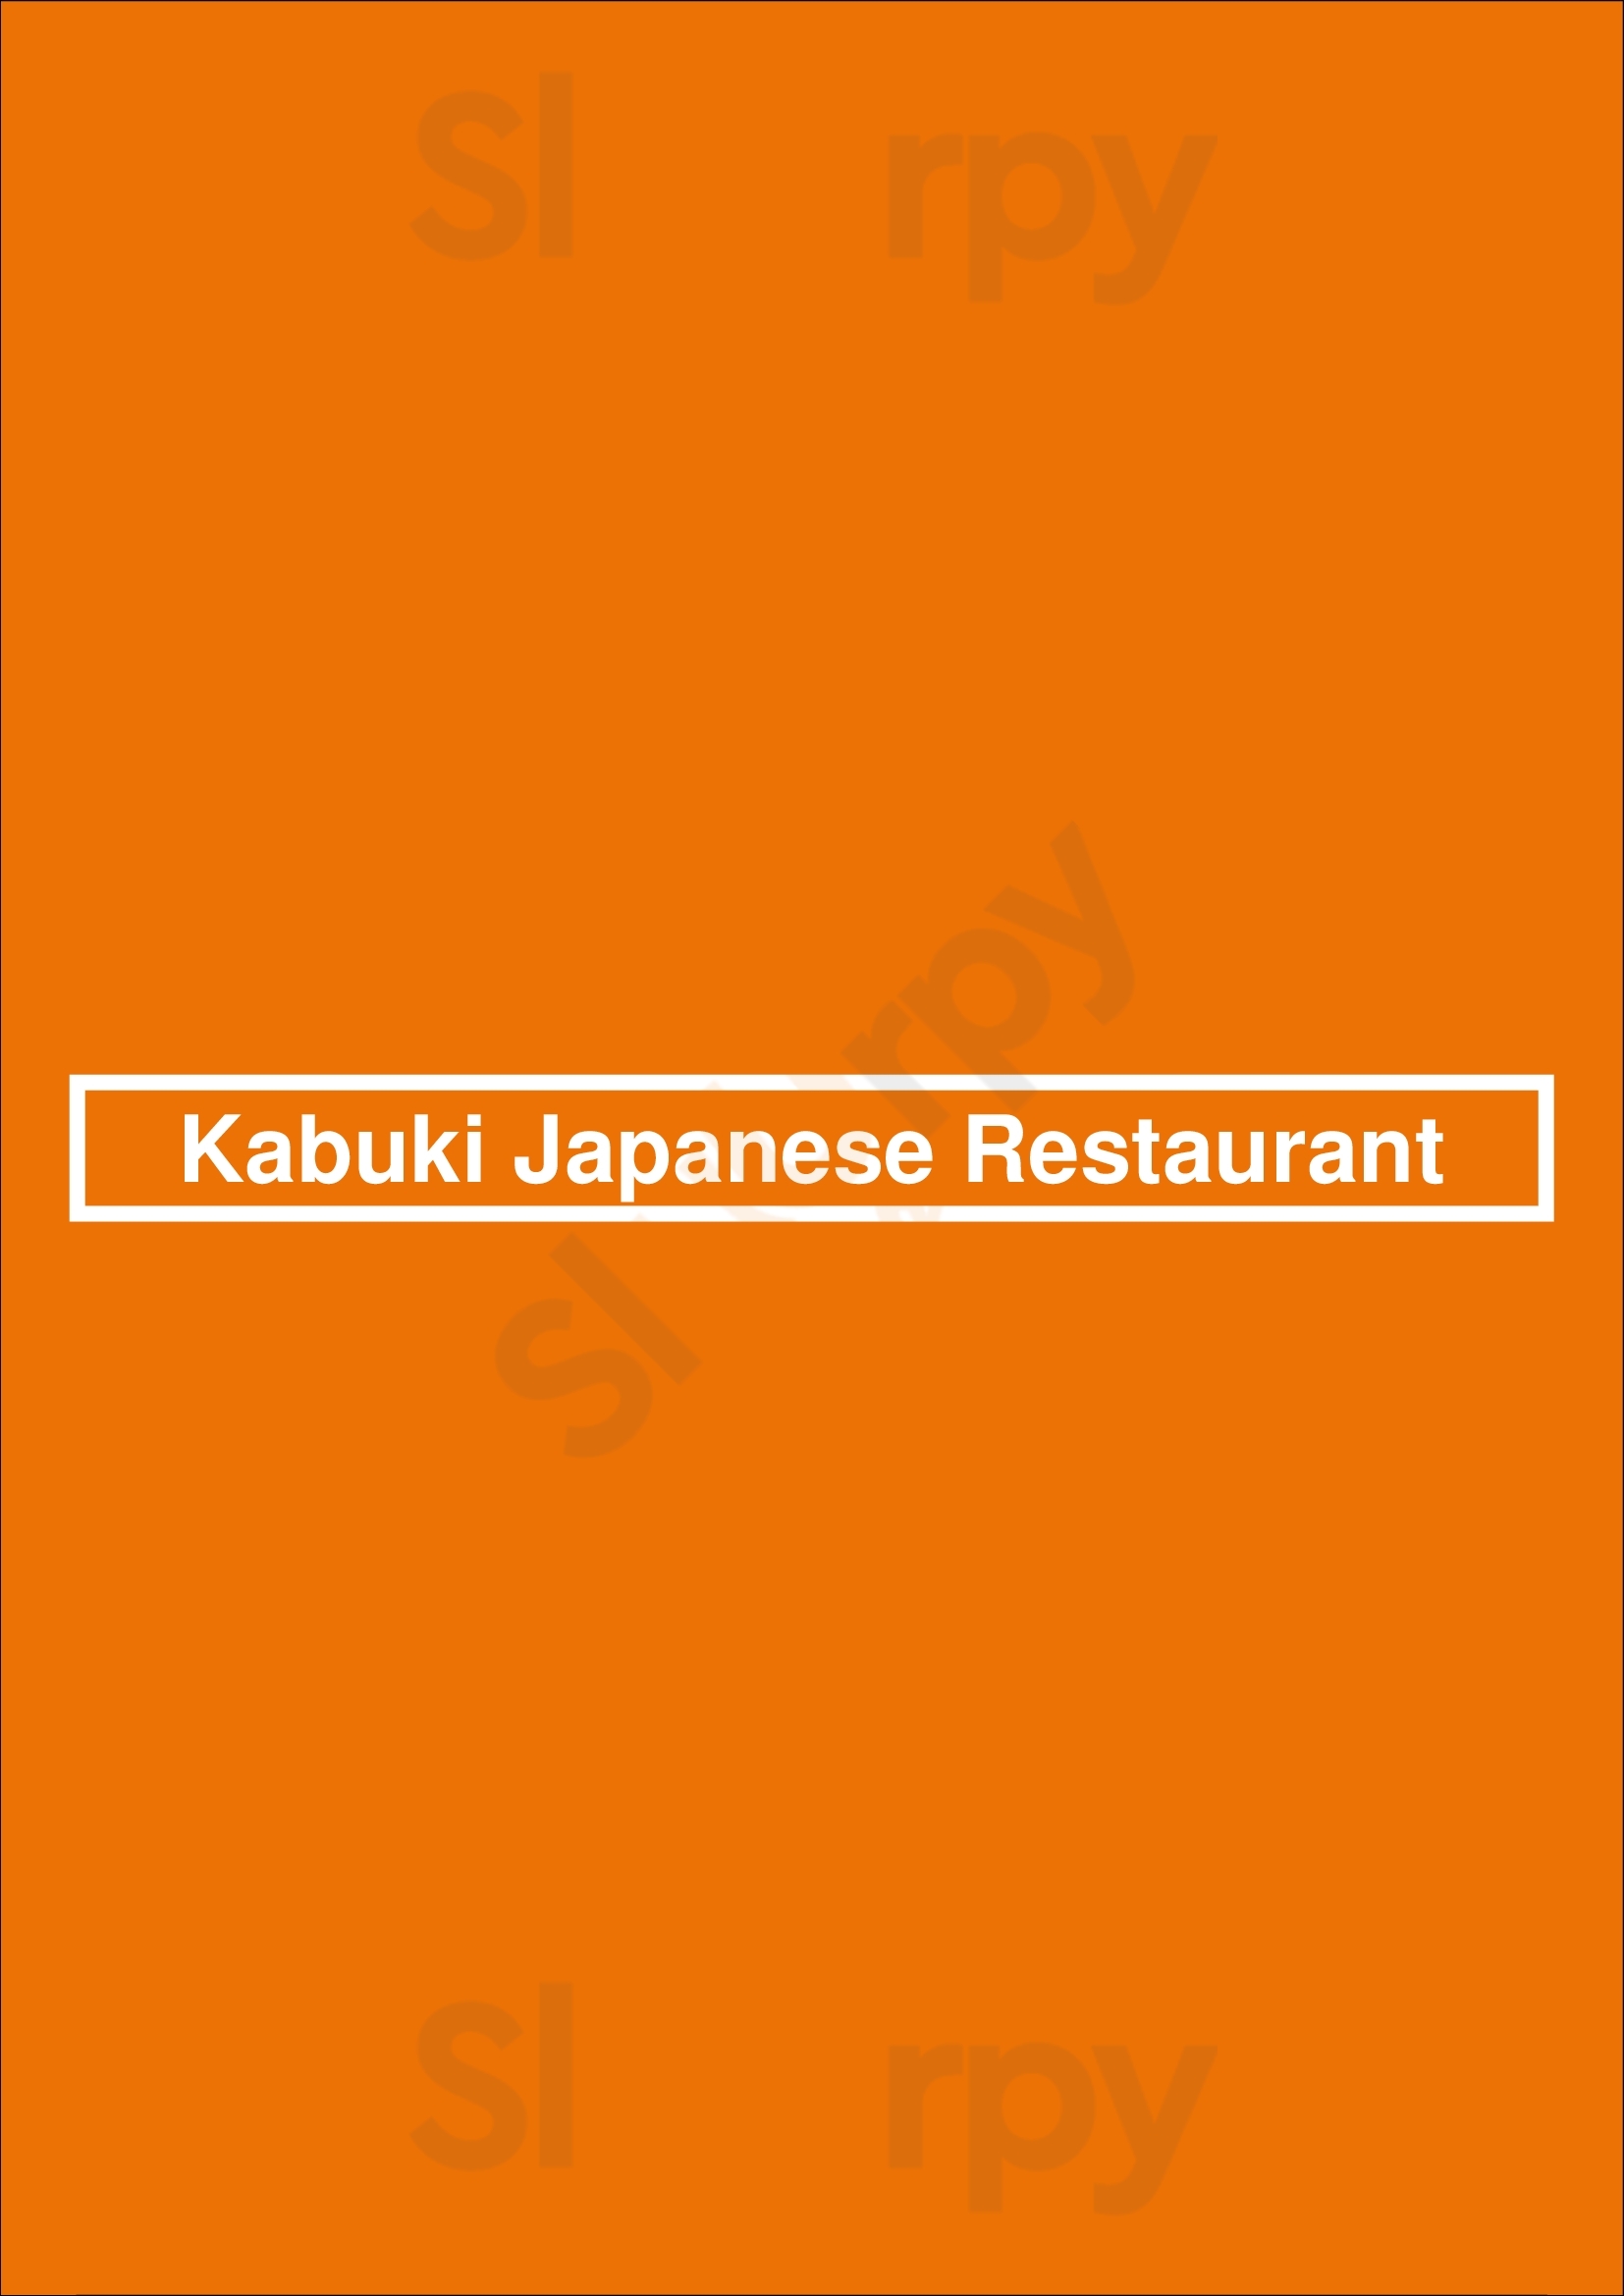 Kabuki Japanese Restaurant Huntington Beach Menu - 1